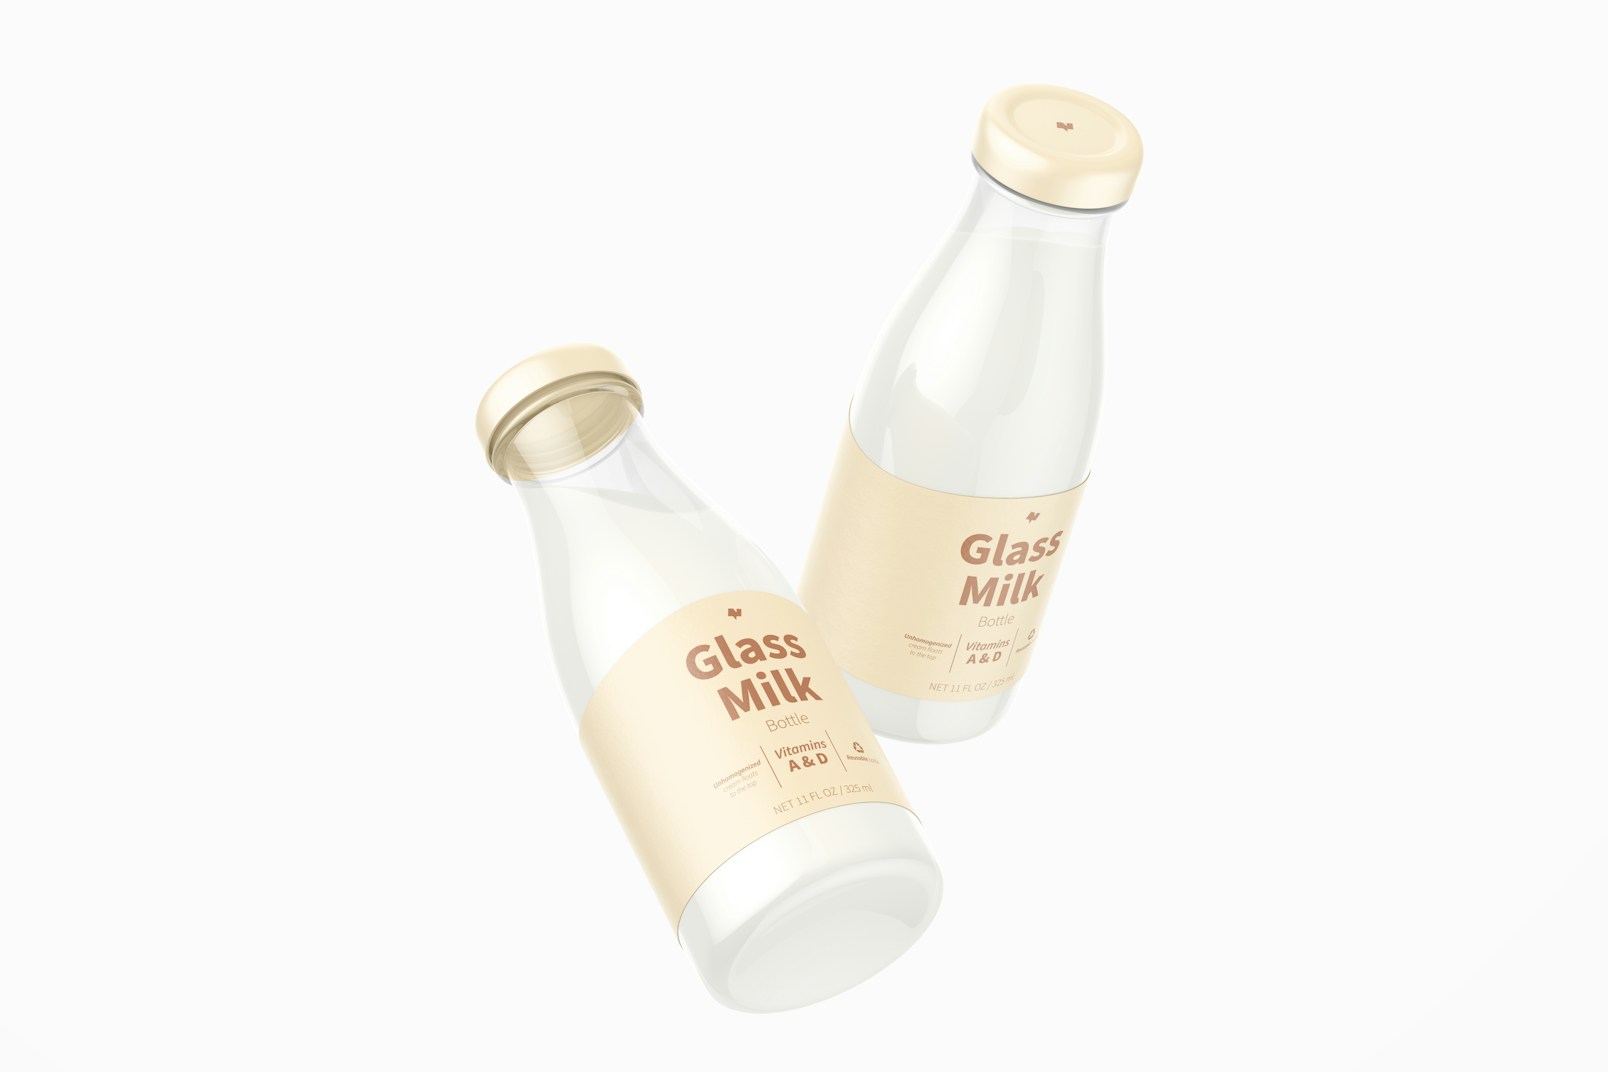 11 oz Glass Milk Bottles Mockup, Floating